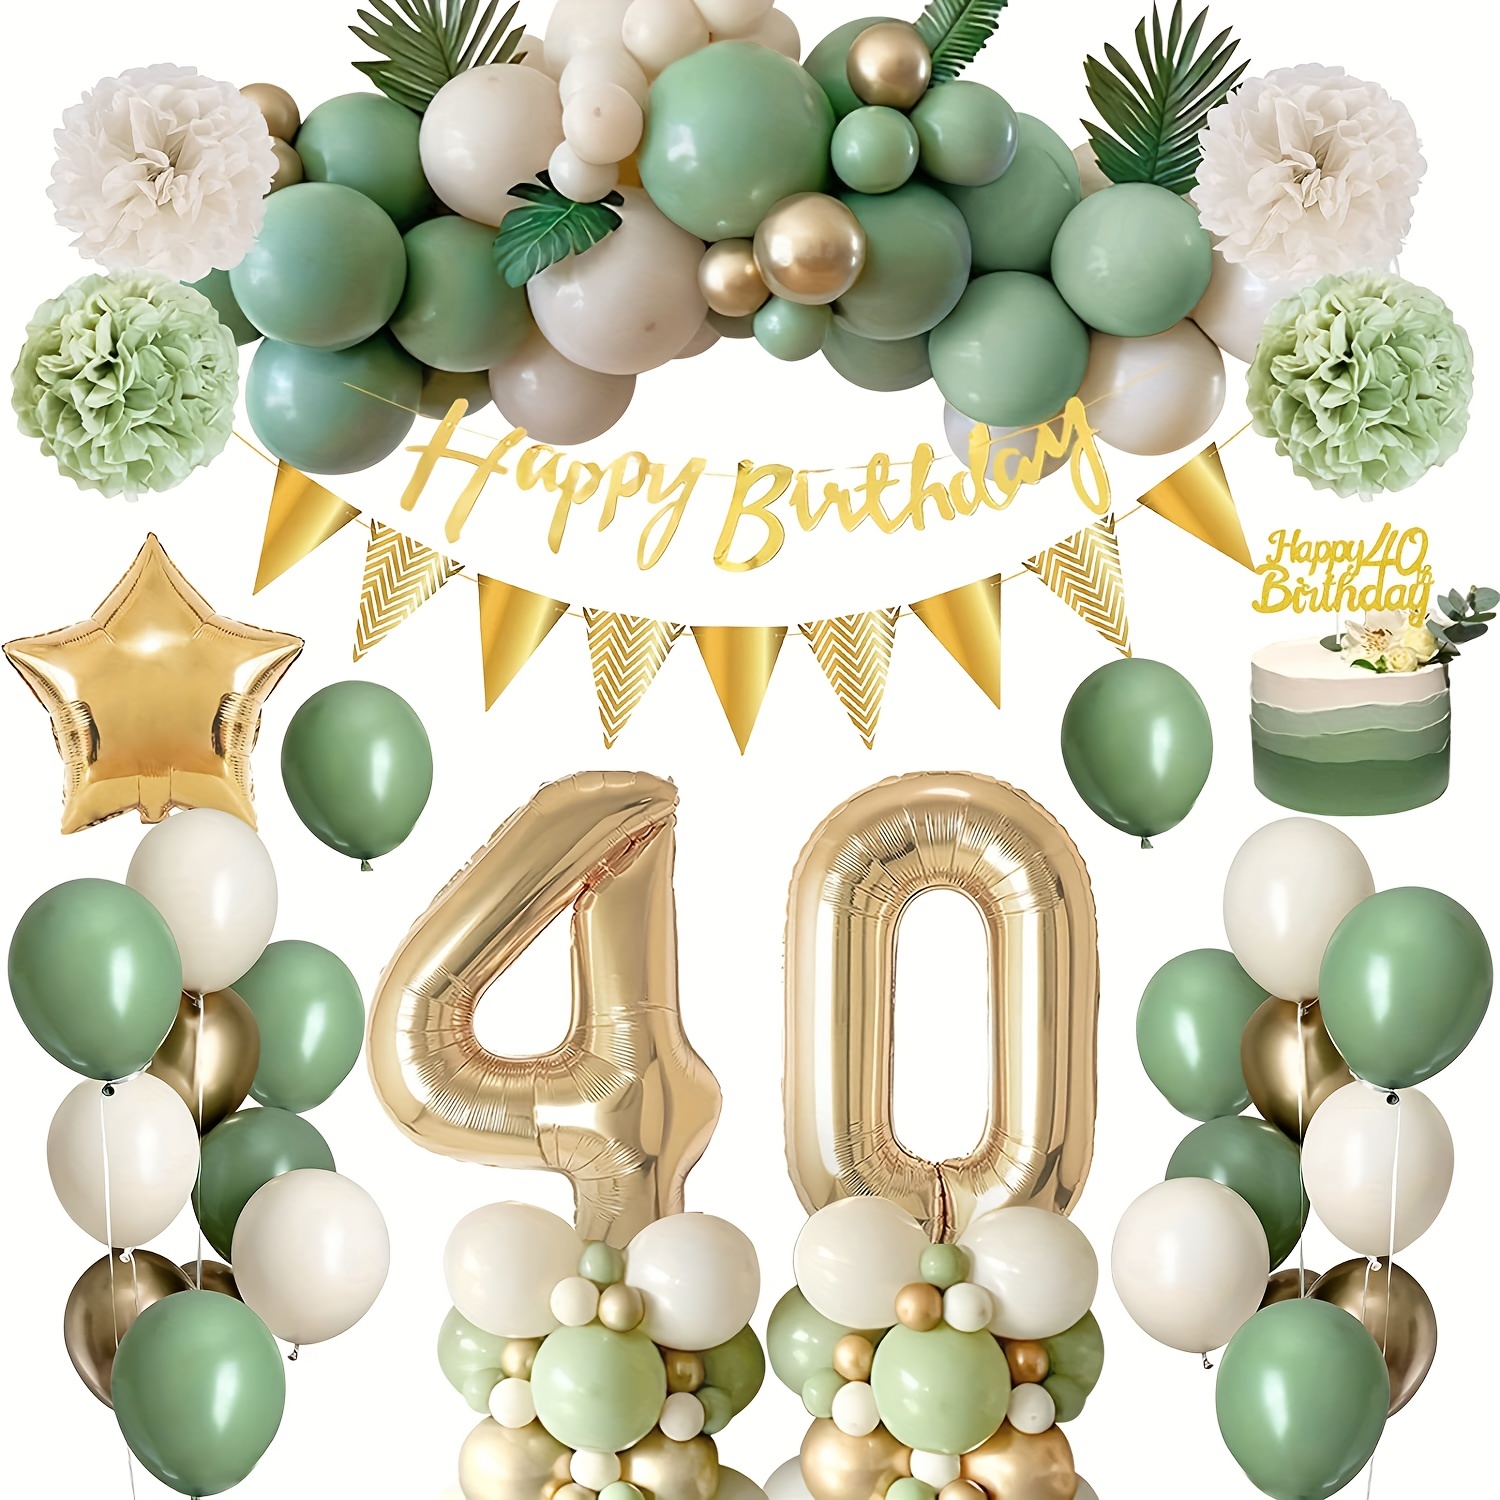  Regalo de cumpleaños número 40 para mujer, 40 cumpleaños, tengo  40 años, las mejores ideas de regalo de cumpleaños de 40 años para esposa,  mamá, ella, regalos de cumpleaños 40 para